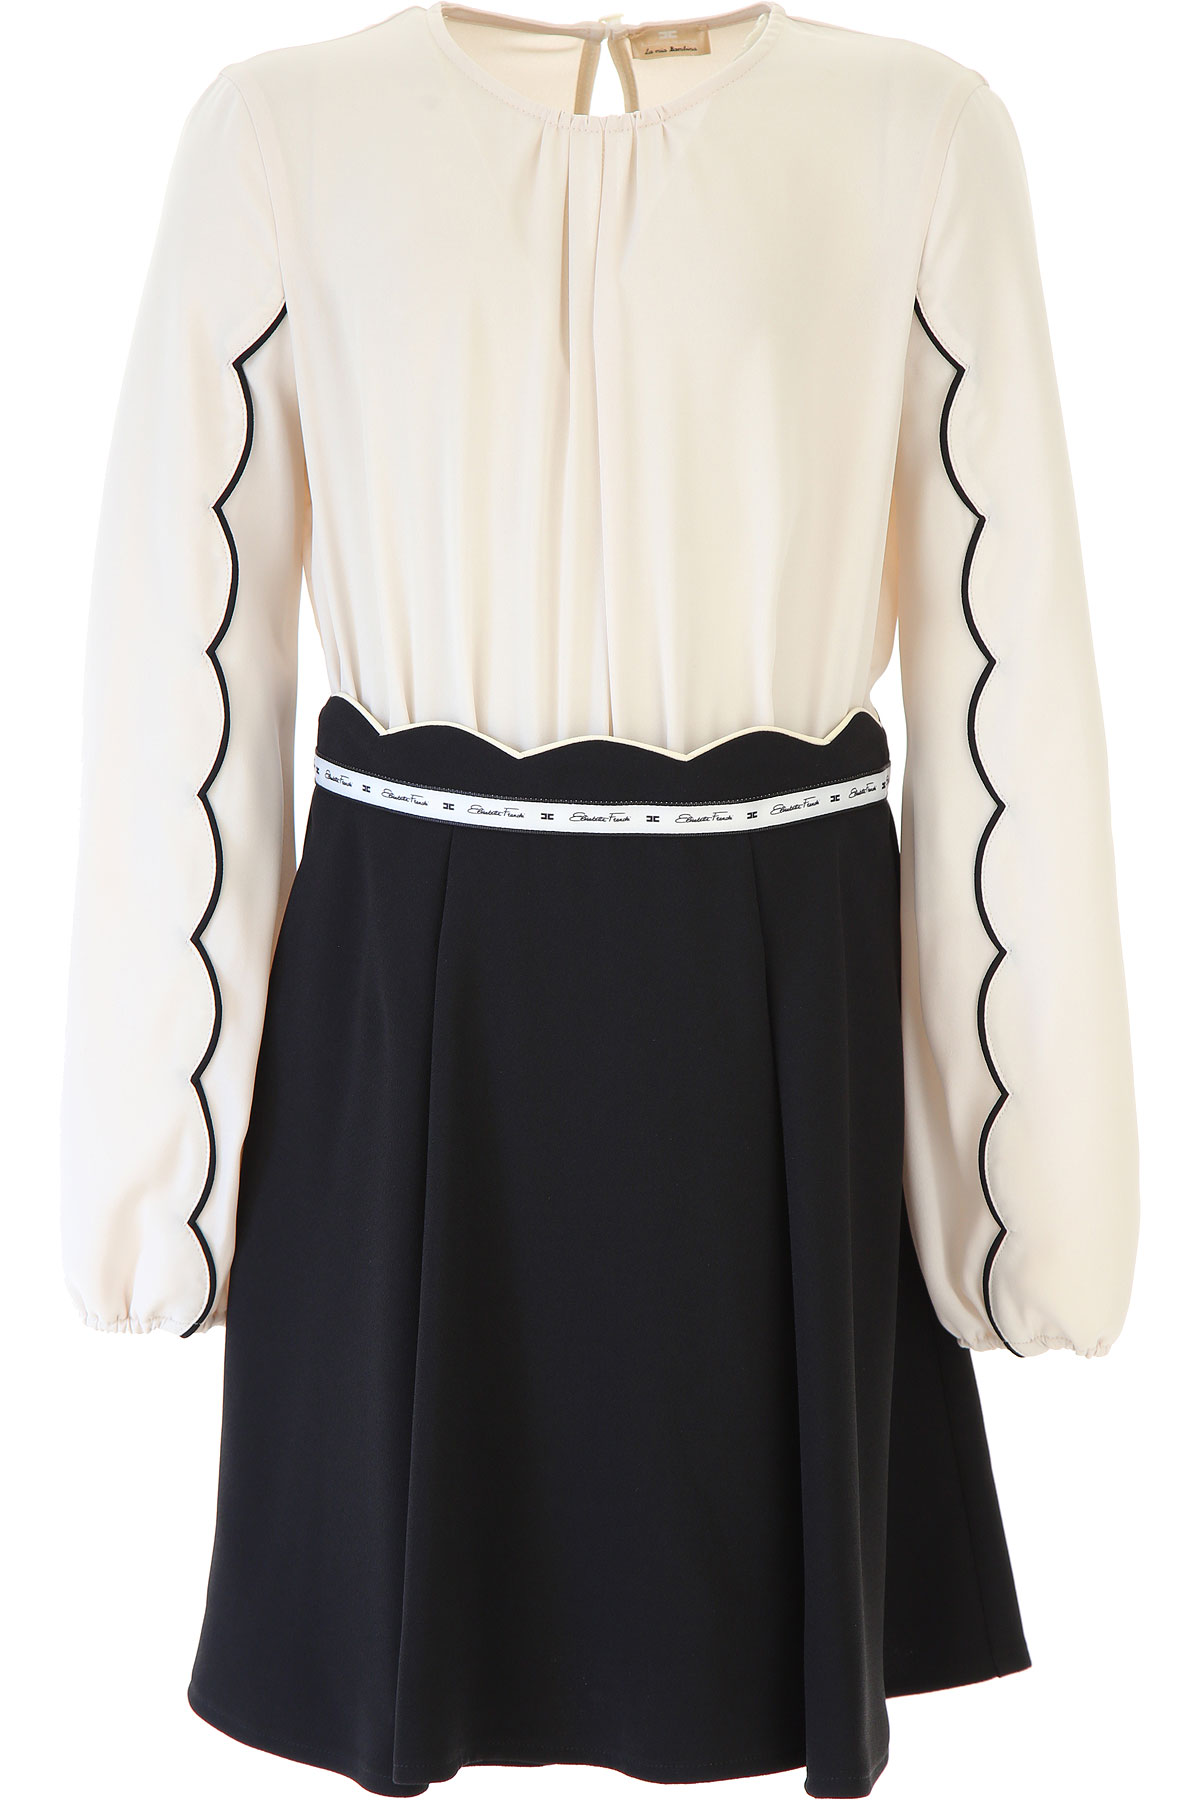 Elisabetta Franchi Kleid für Mädchen Günstig im Sale, Beige, Polyester, 2017, L M S XL